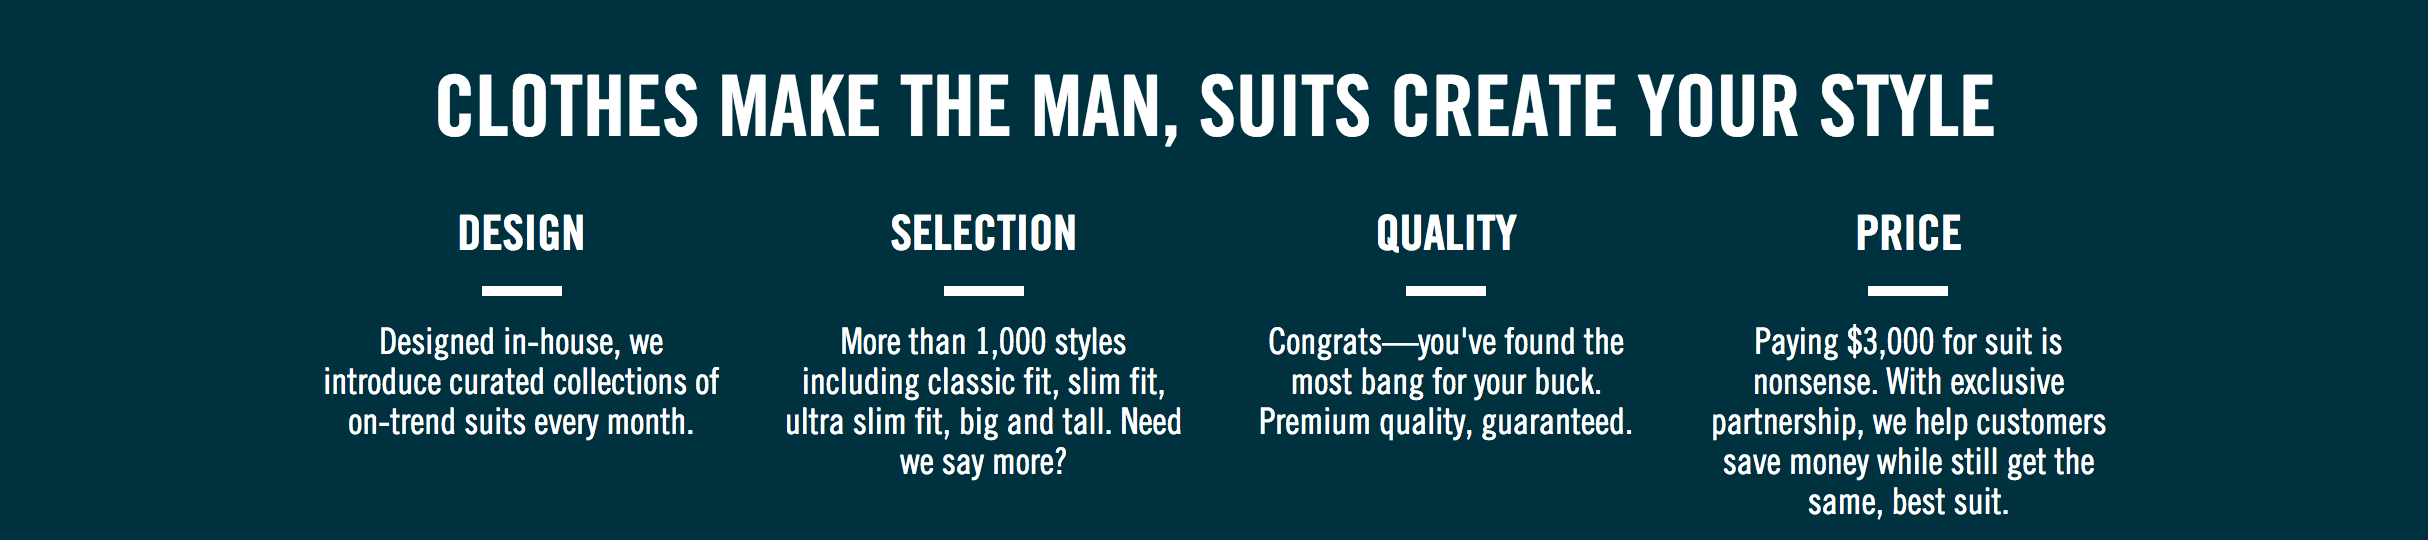 suit for sale